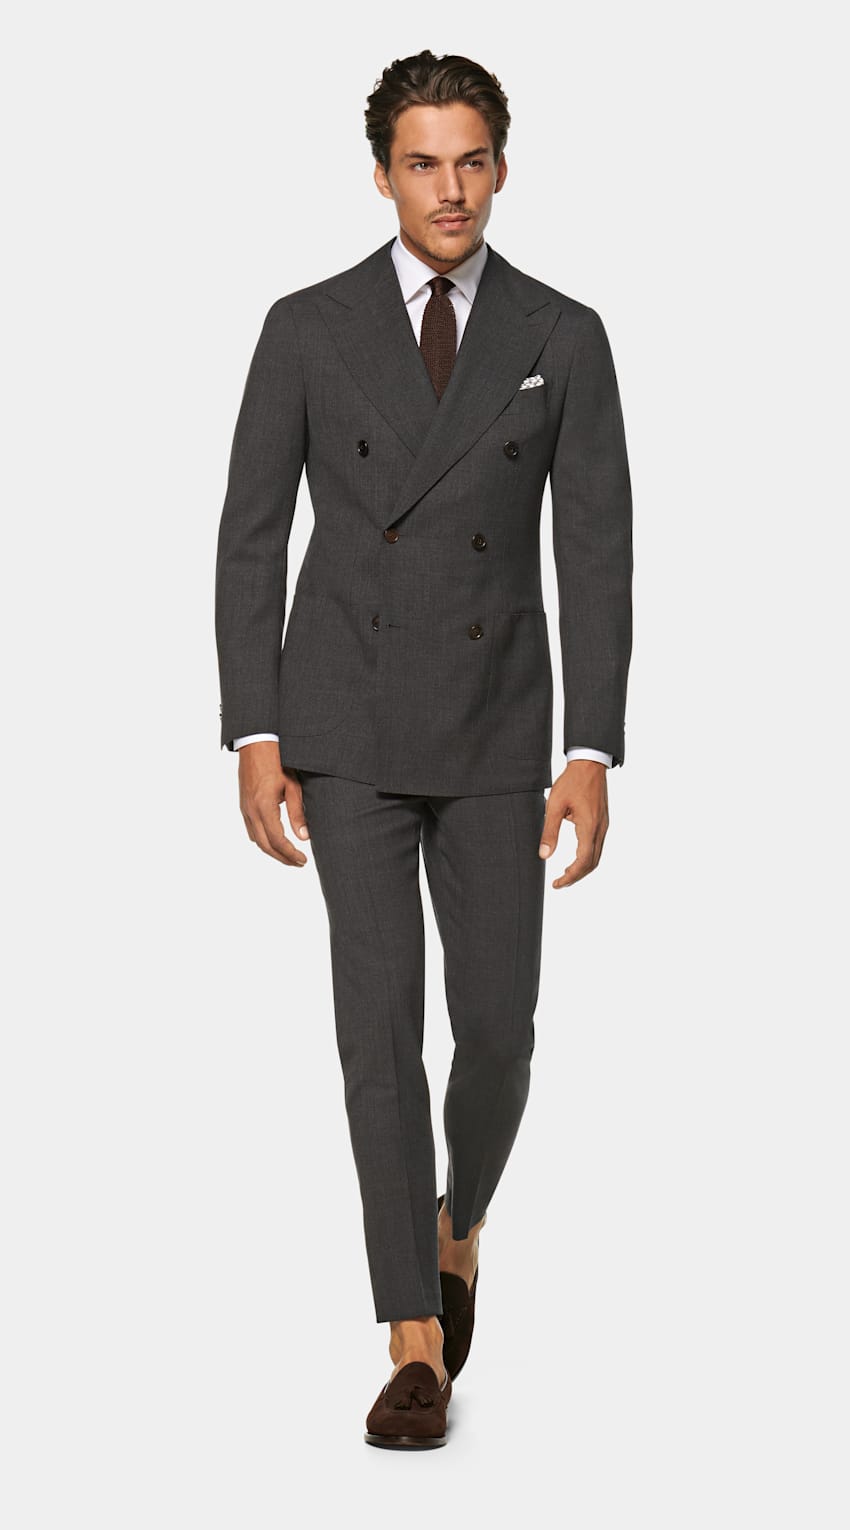 SUITSUPPLY  by Lanificio Cerruti, Italy Dark Grey Havana Suit